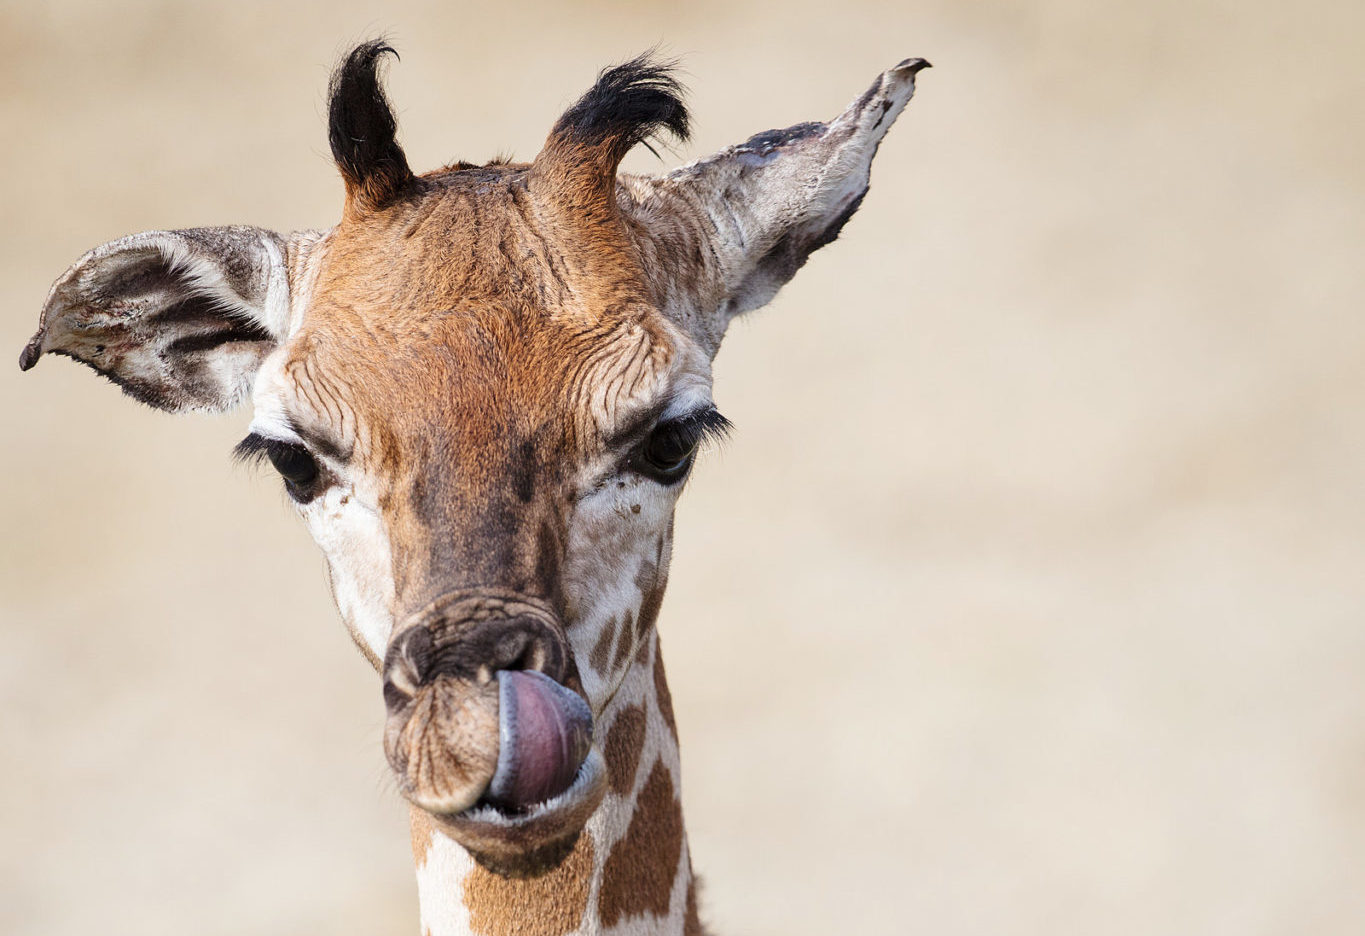 Adorable Baby Giraffe